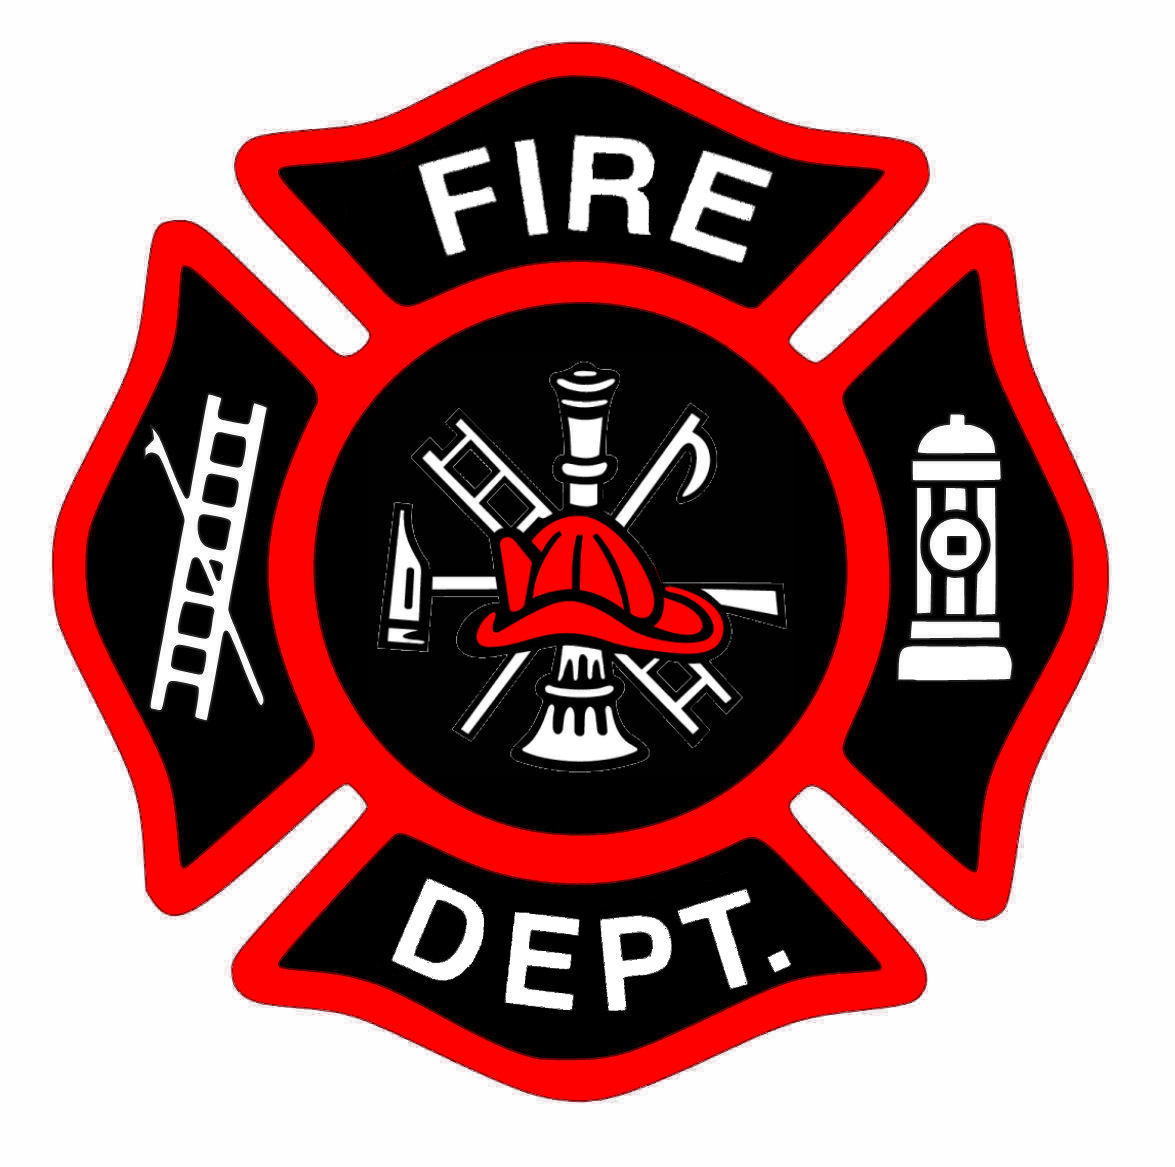 Firemen Logo - Firefighter fireman emblem clipart clipart kid - Clipartix